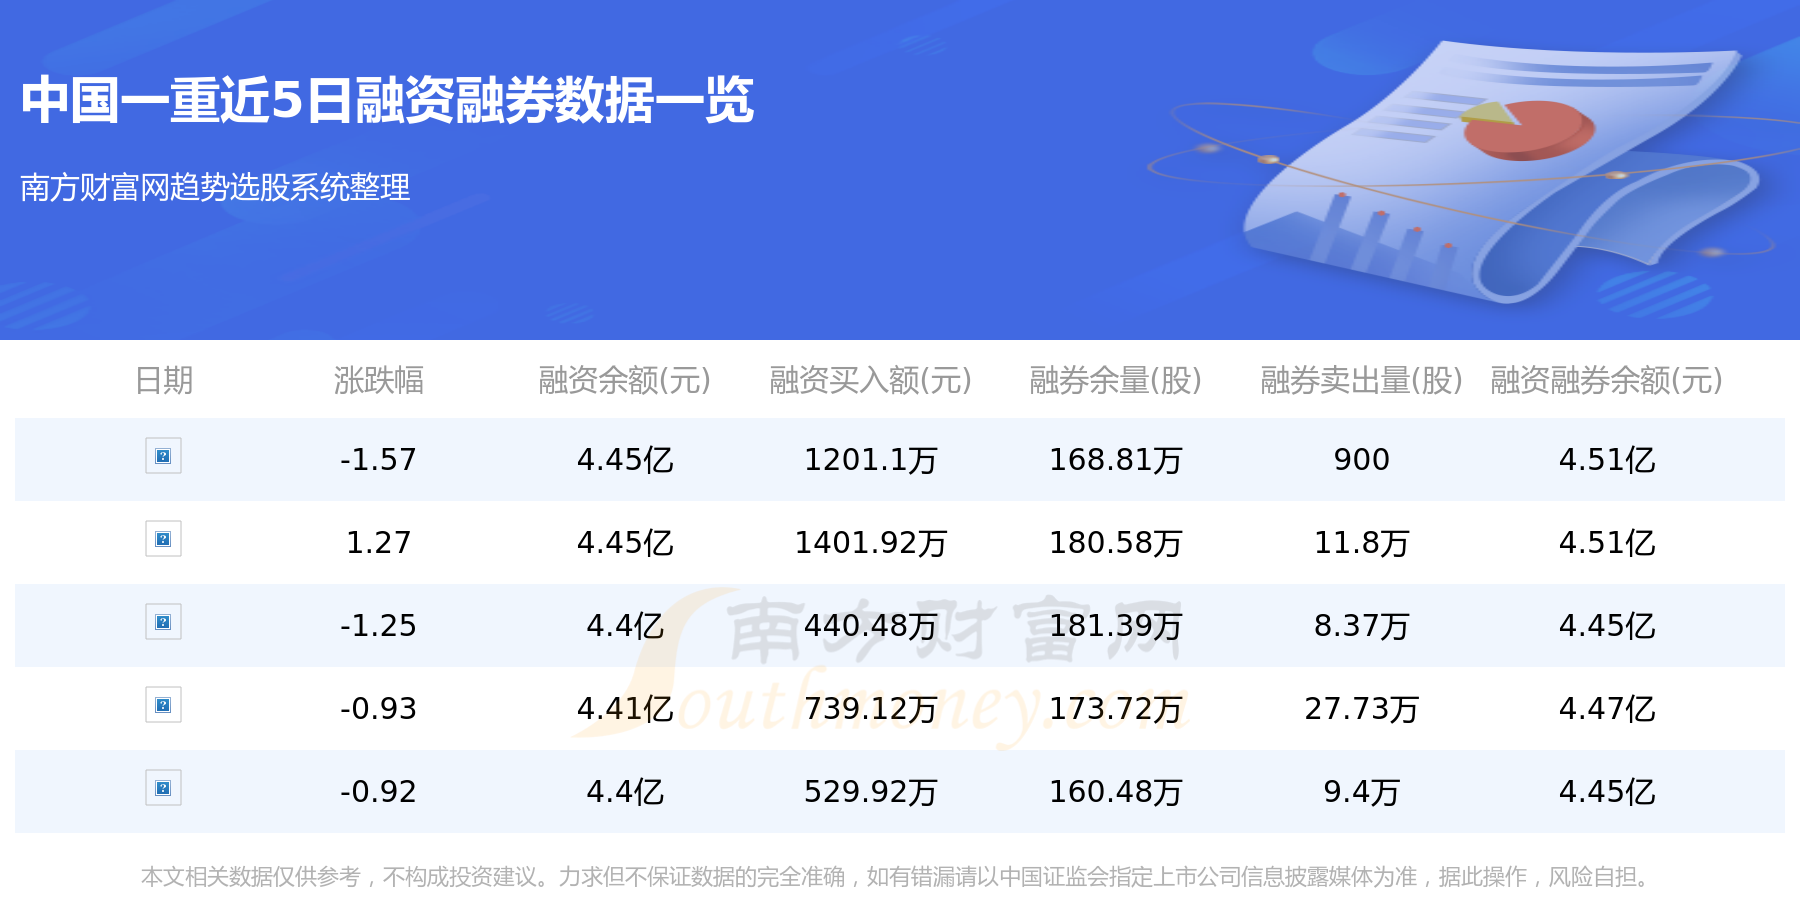 中国一重3月15日主力资金净流入4546.92万元